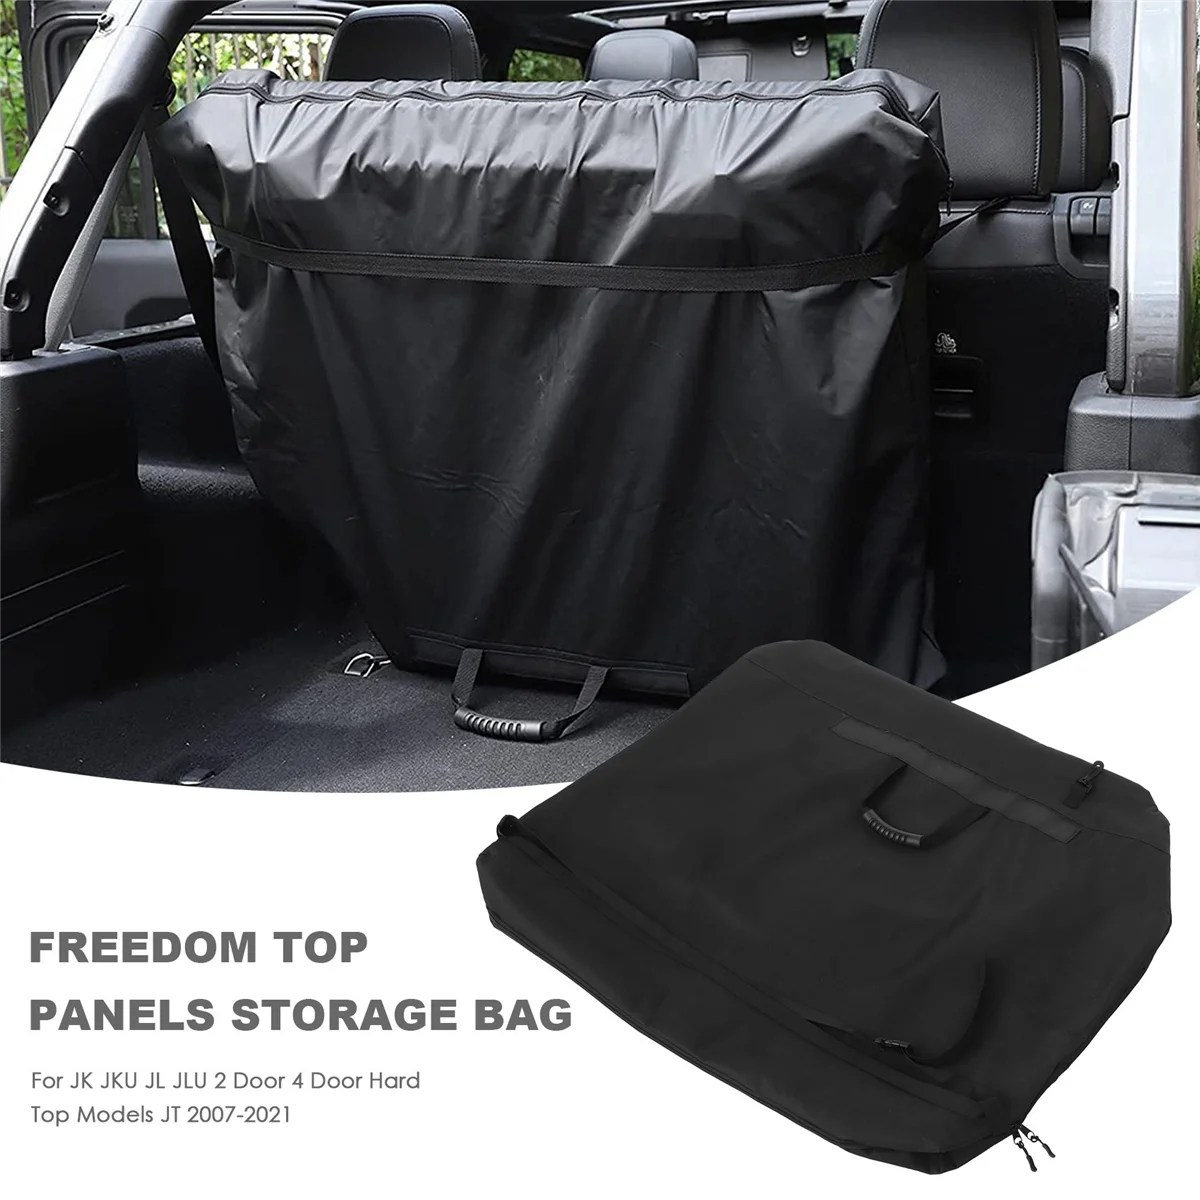 Özgürlük Üst Paneller saklama çantası Jeep Wrangler JK için JKU JL JLU 2 Kapı 4 Kapı Sert Üst Modeller JT 2007-2021 (Siyah)